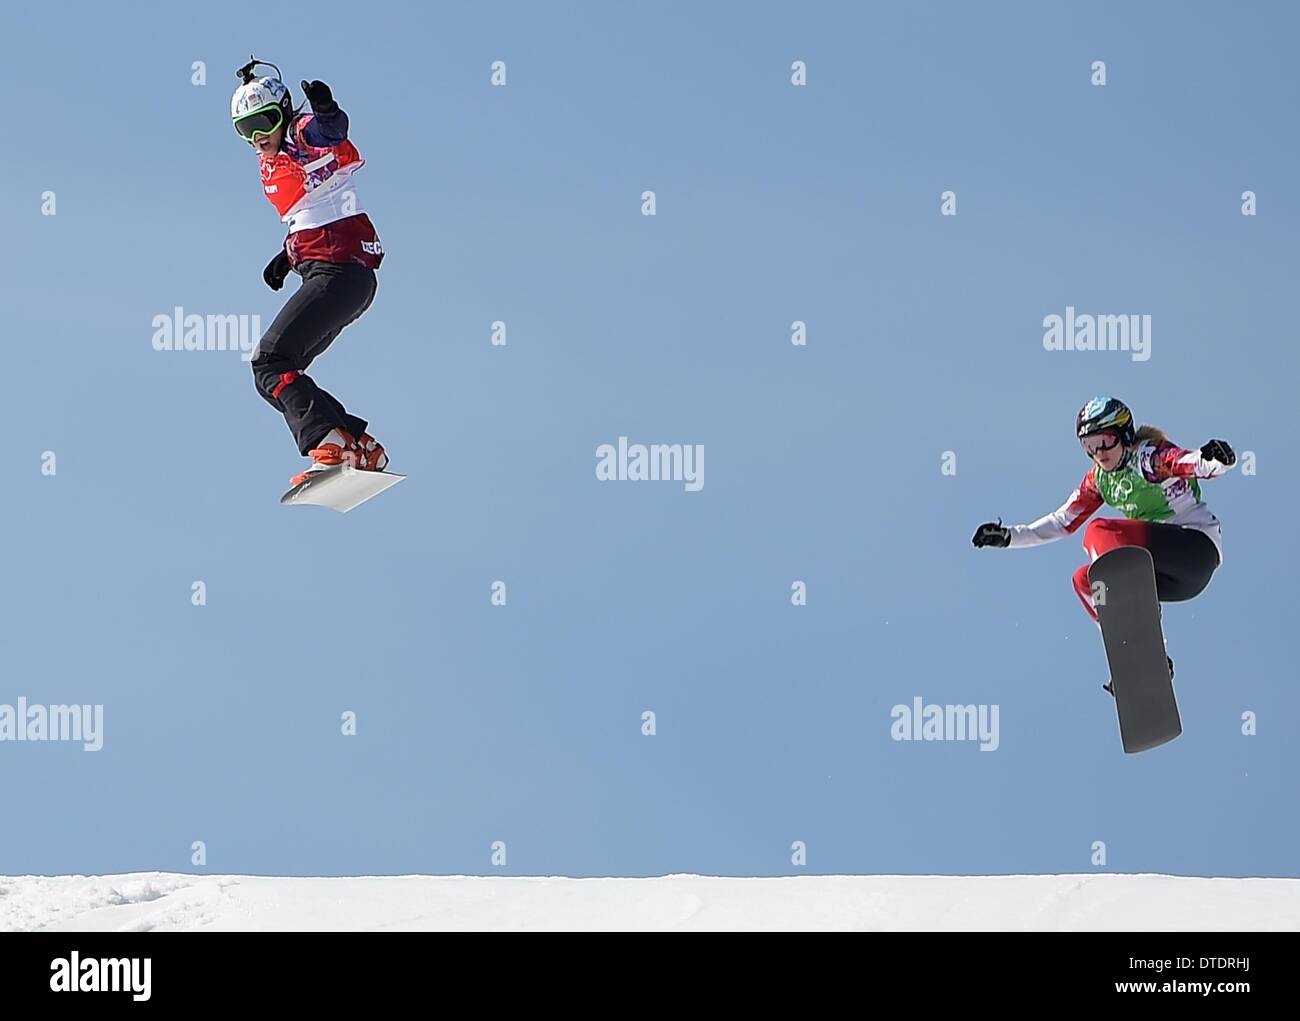 Eva Samkova (CZE) springt die letzten Hügel auf dem ersten Platz im Finale. Womens Snowbboard Cross - Rosa Khutor Extreme Park - Sotschi - Russland - 16.02.2014 Stockfoto